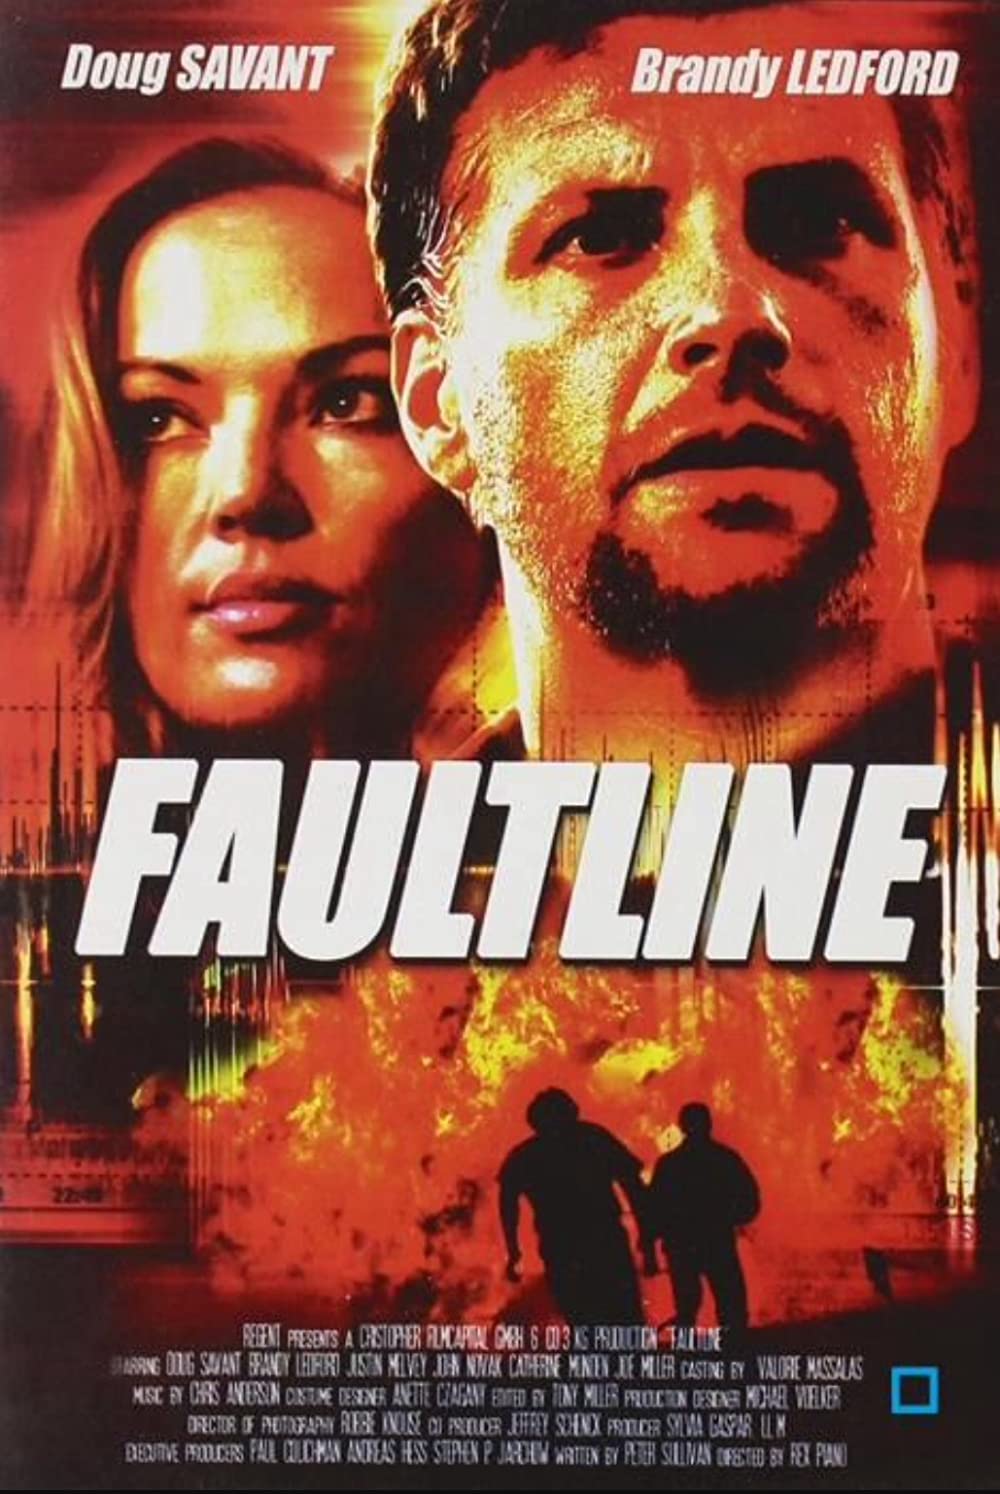 Download Faultline Movie | Faultline Hd, Dvd, Divx